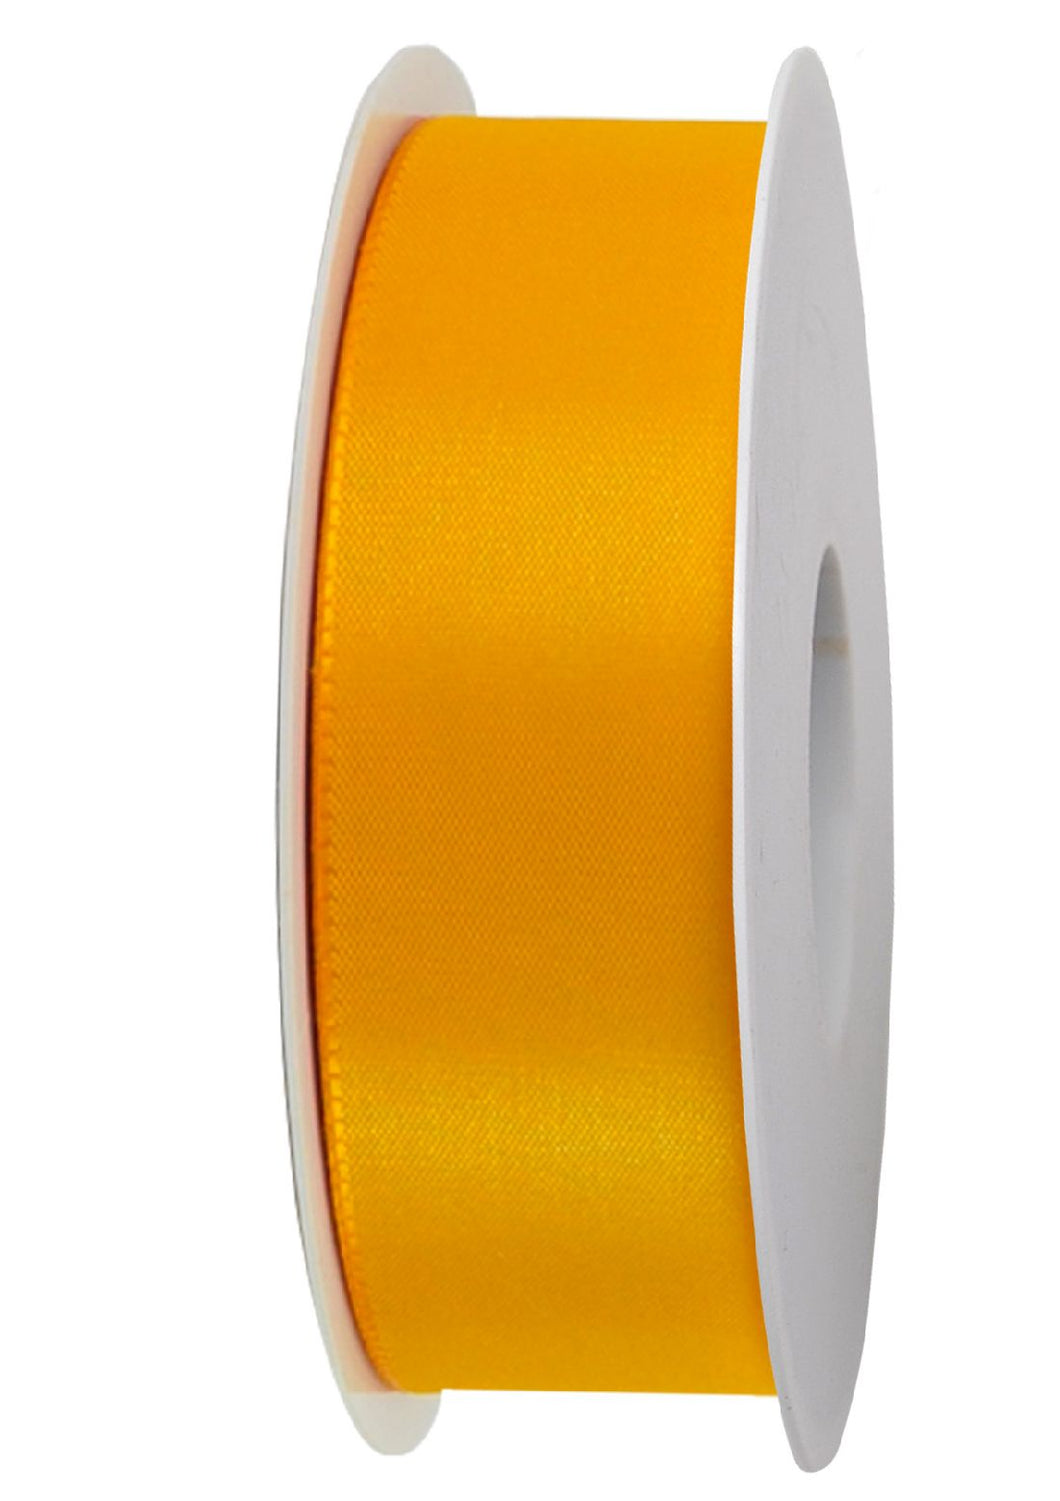 Basicband ohne Drahtkante Gelb / Breite: 40mm / Länge: 50m - 0,37 € pro Meter